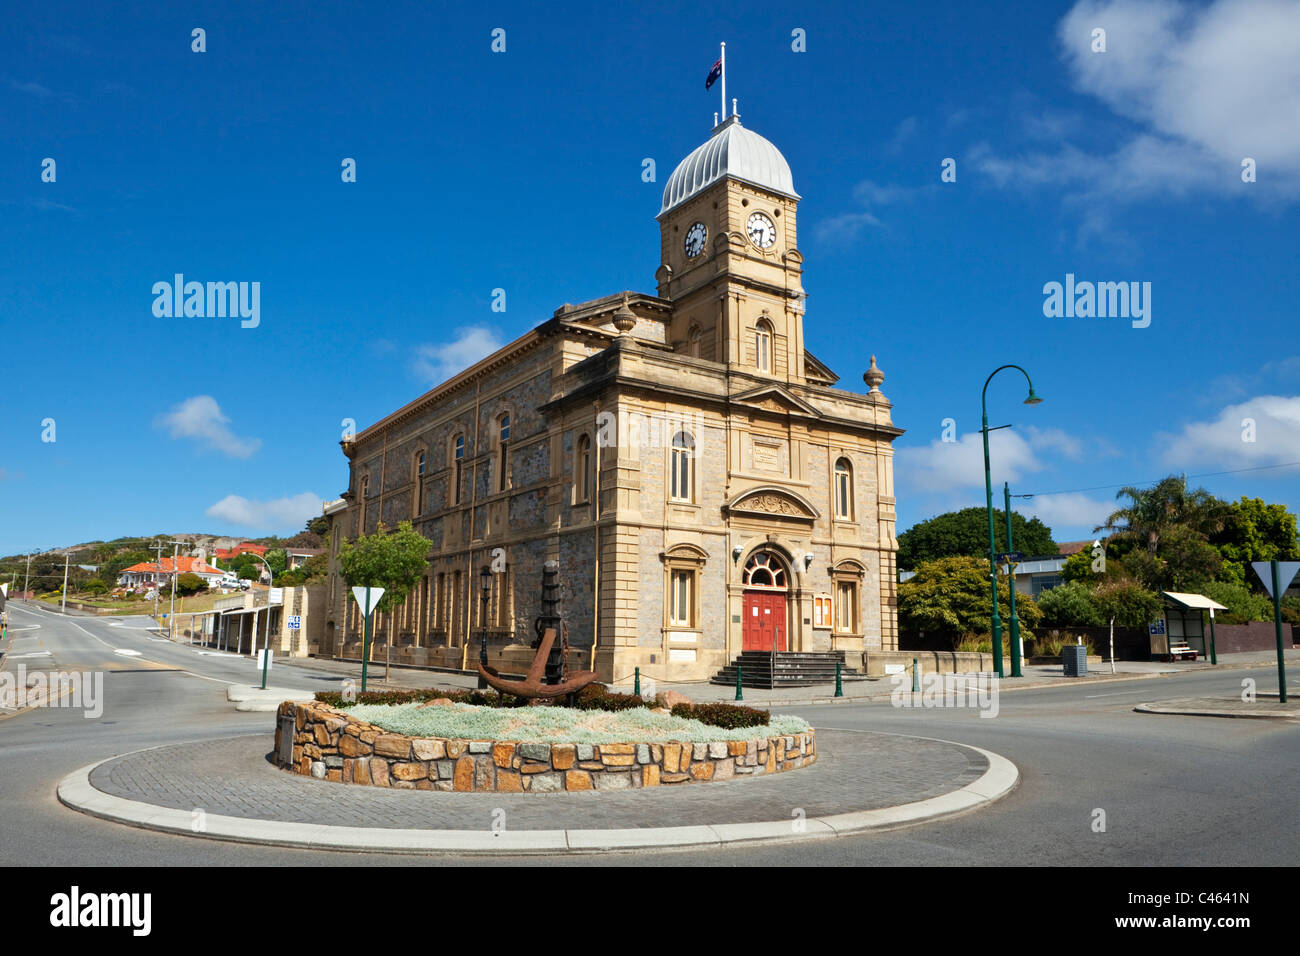 Historique L'hôtel de ville d'Albany, datant de 1888. Albany, Australie occidentale, Australie Banque D'Images